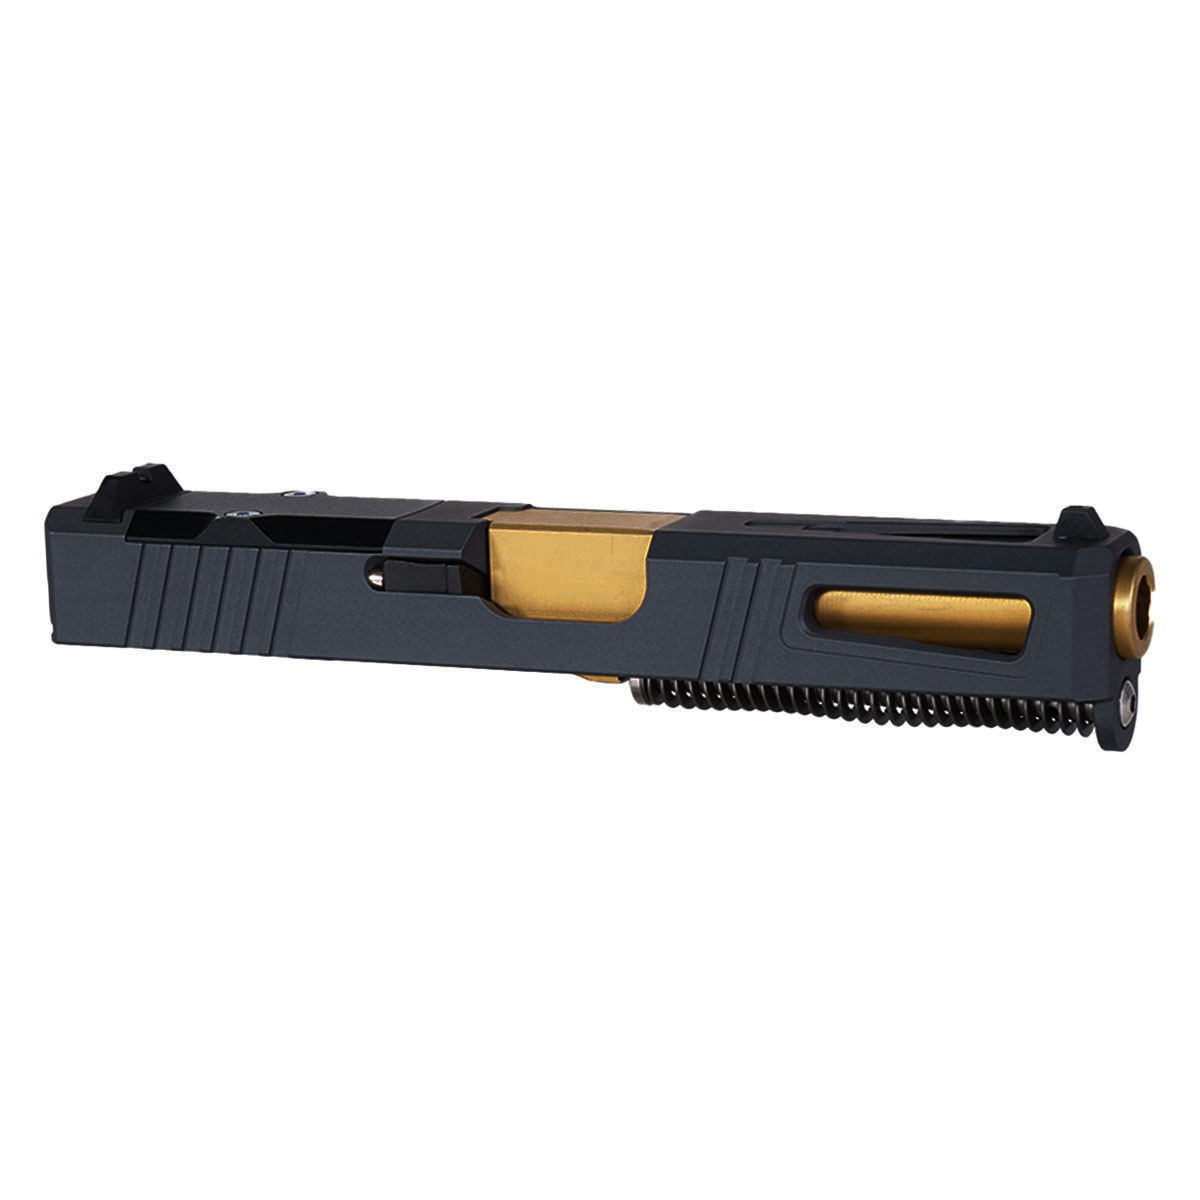 OTD 'The Juno' 9mm Complete Slide Kit - Glock 19 Gen 1-3 Compatible